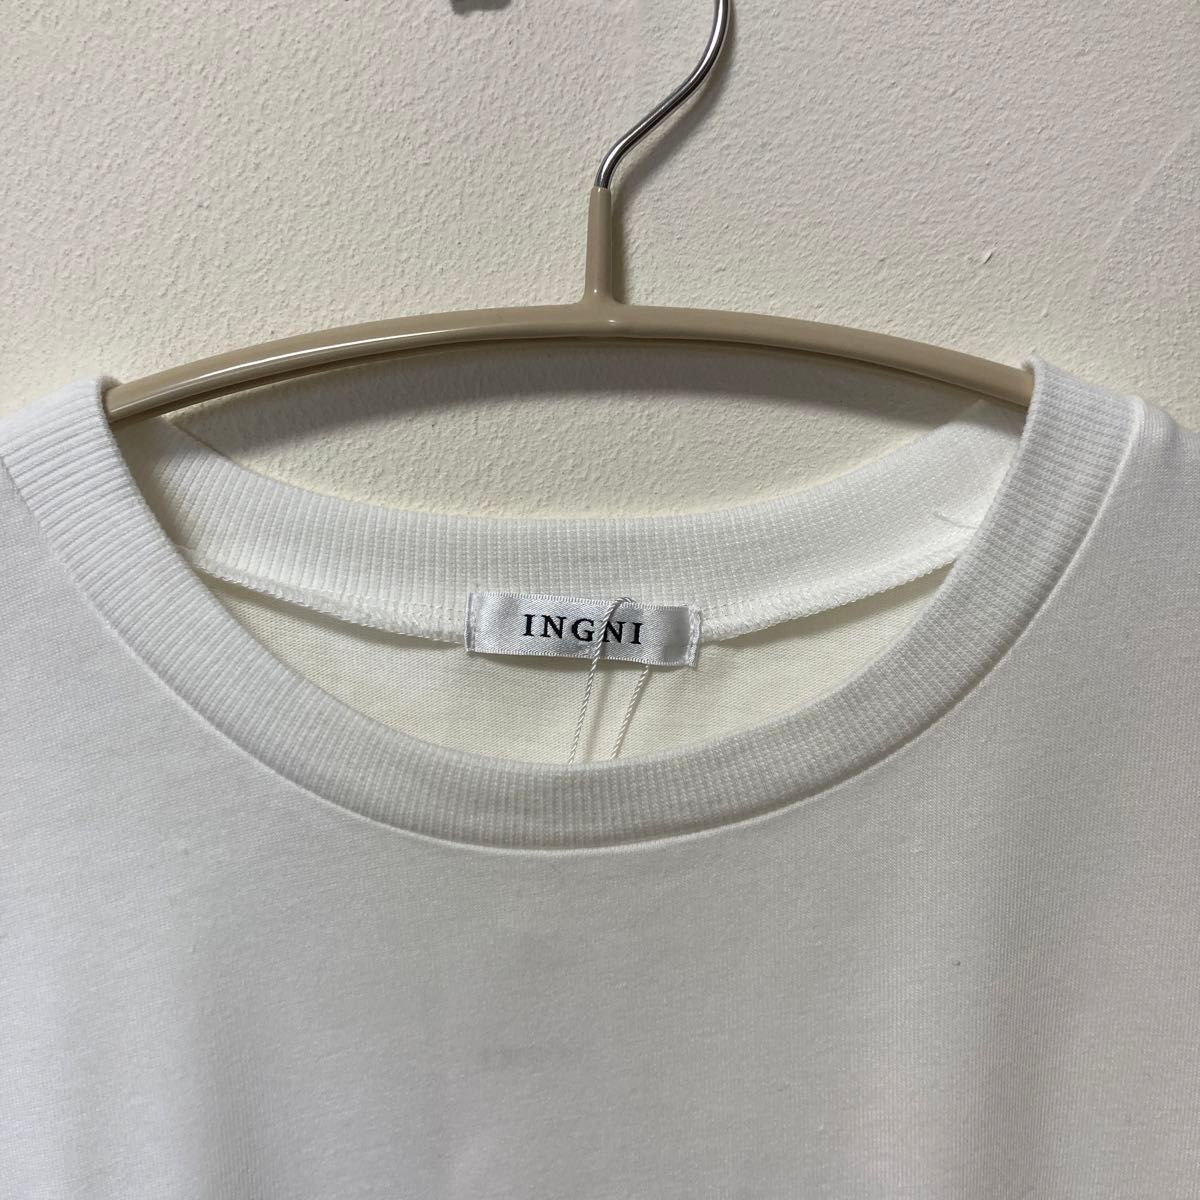 [新品] INGNI (イング)フロッキーカレッジロゴ半袖Tシャツ